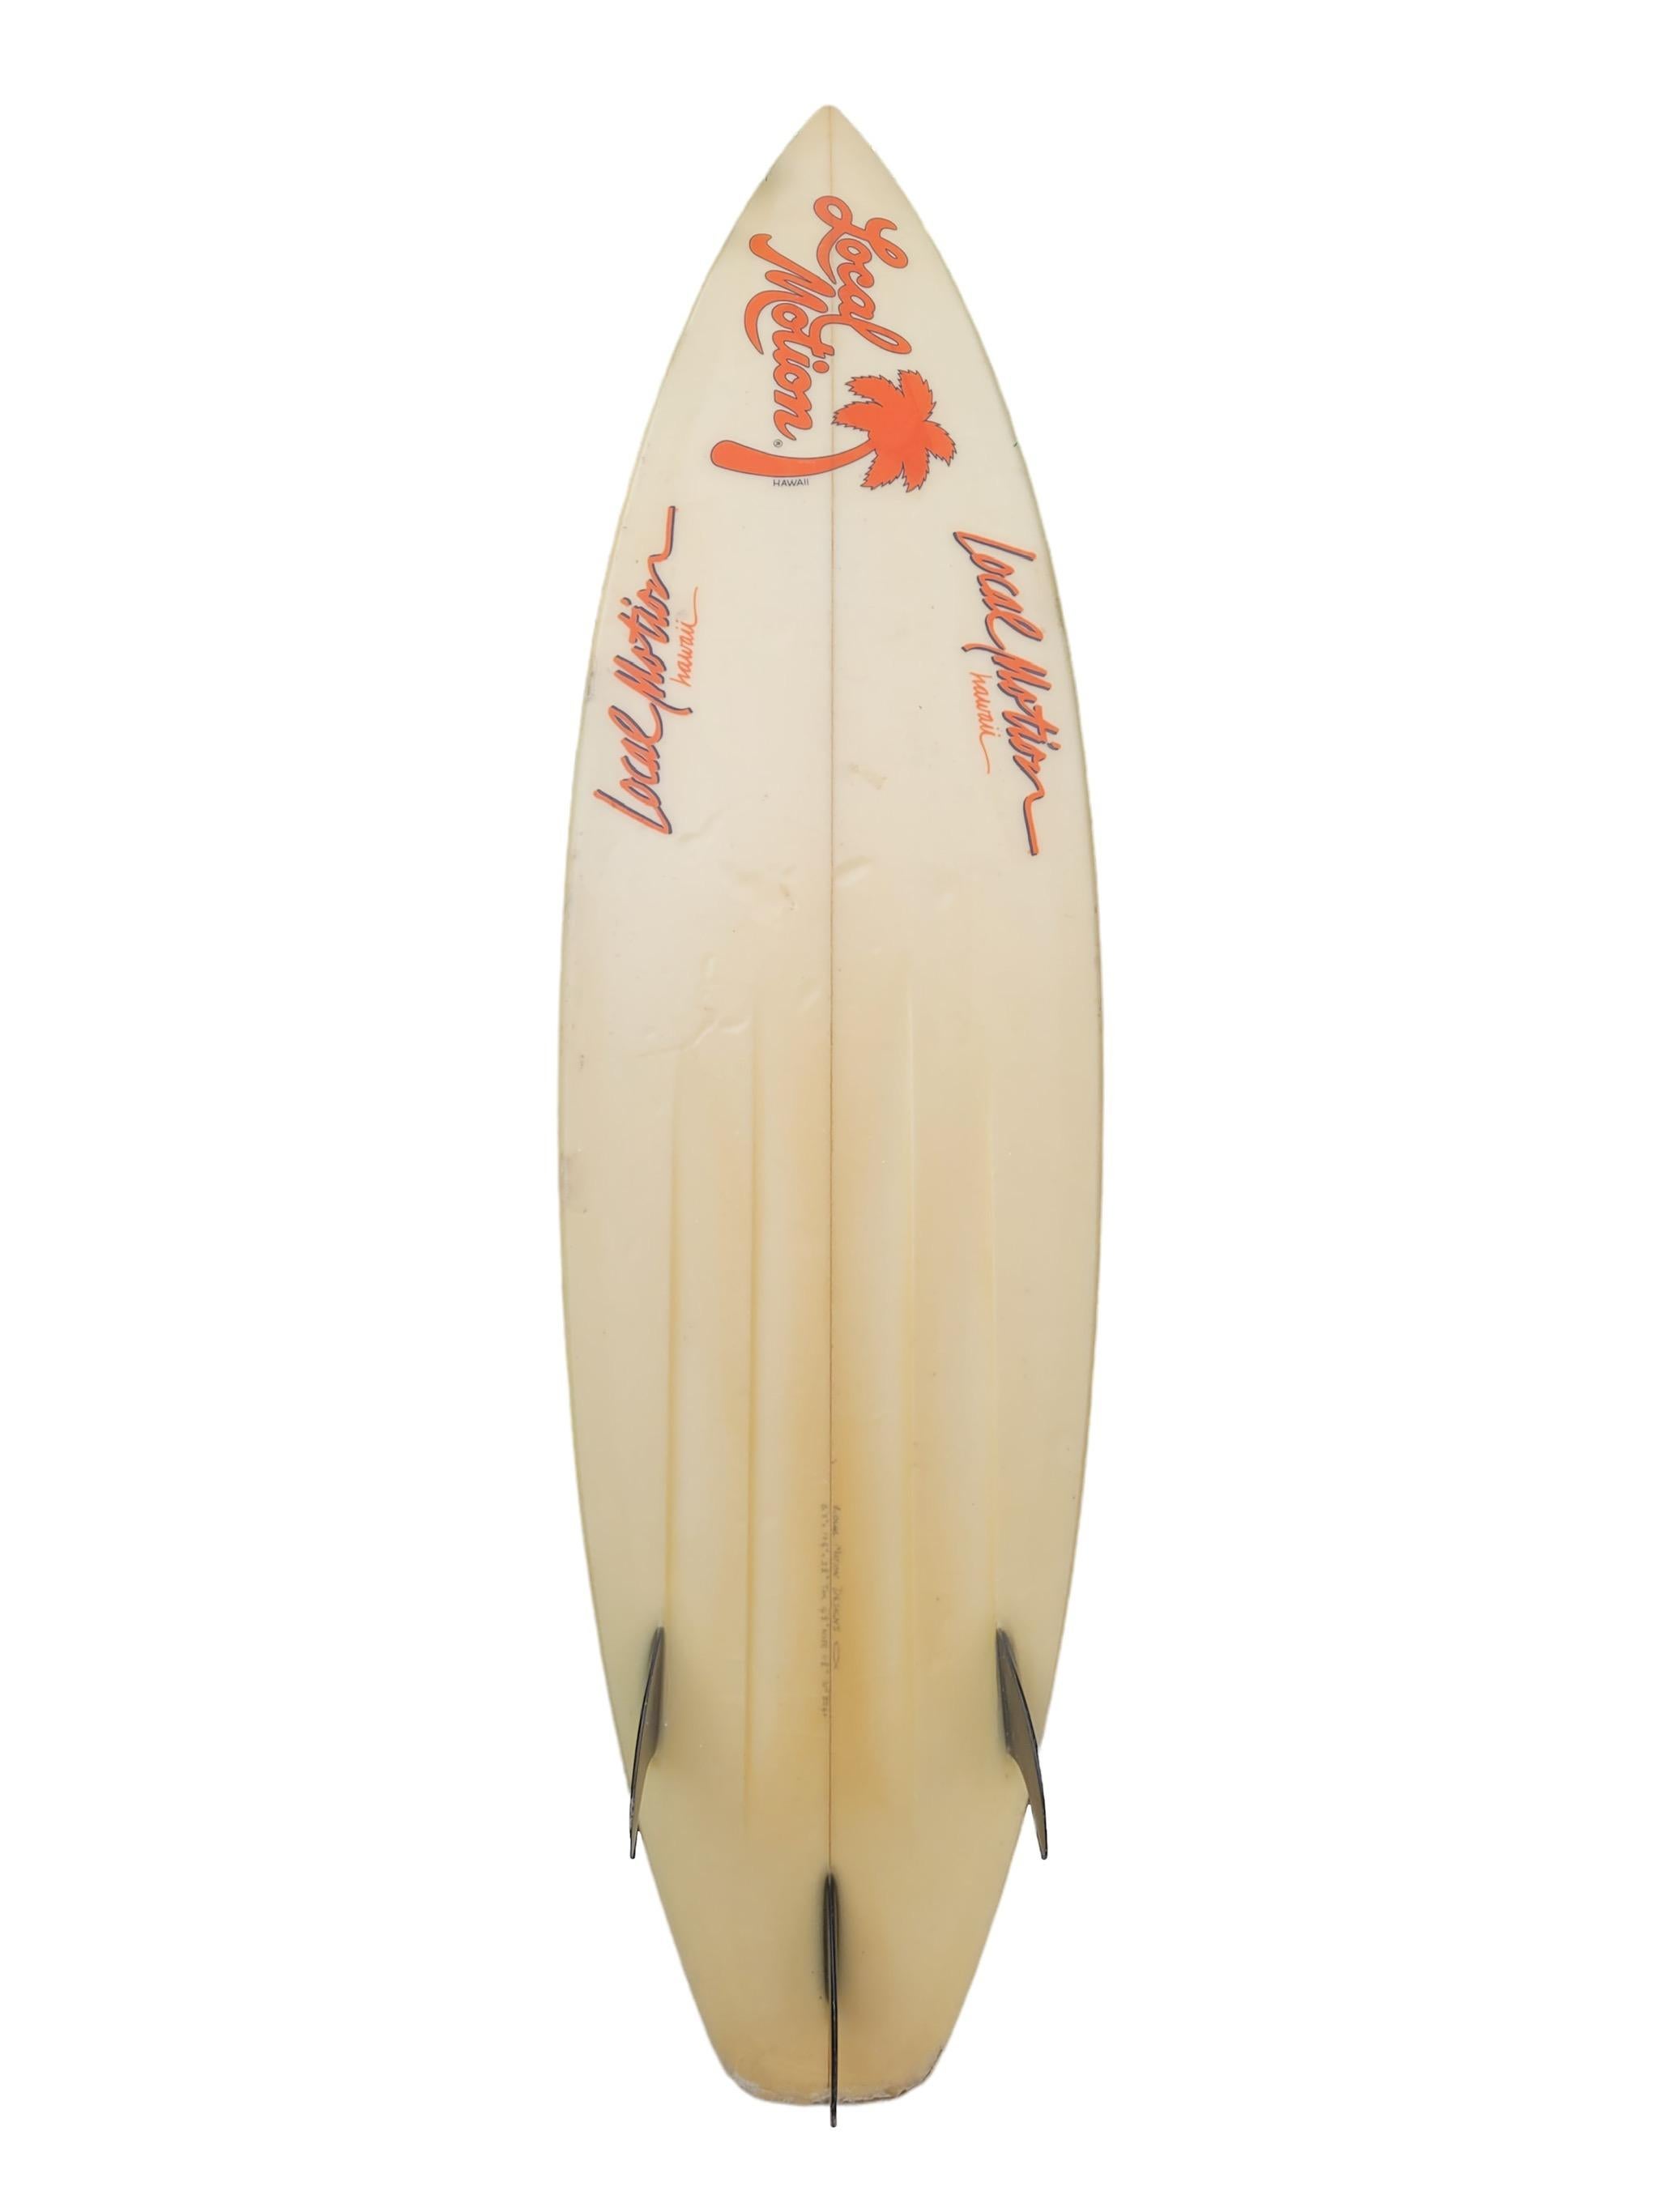 Planche de surf Local Motion vintage des années 1980. Elle est dotée d'un design tribal peint à l'aérographe et d'un système de propulseur à trois ailerons en verre. Un bel exemple d'une planche de surf Local Motion des années 1980, unique en son